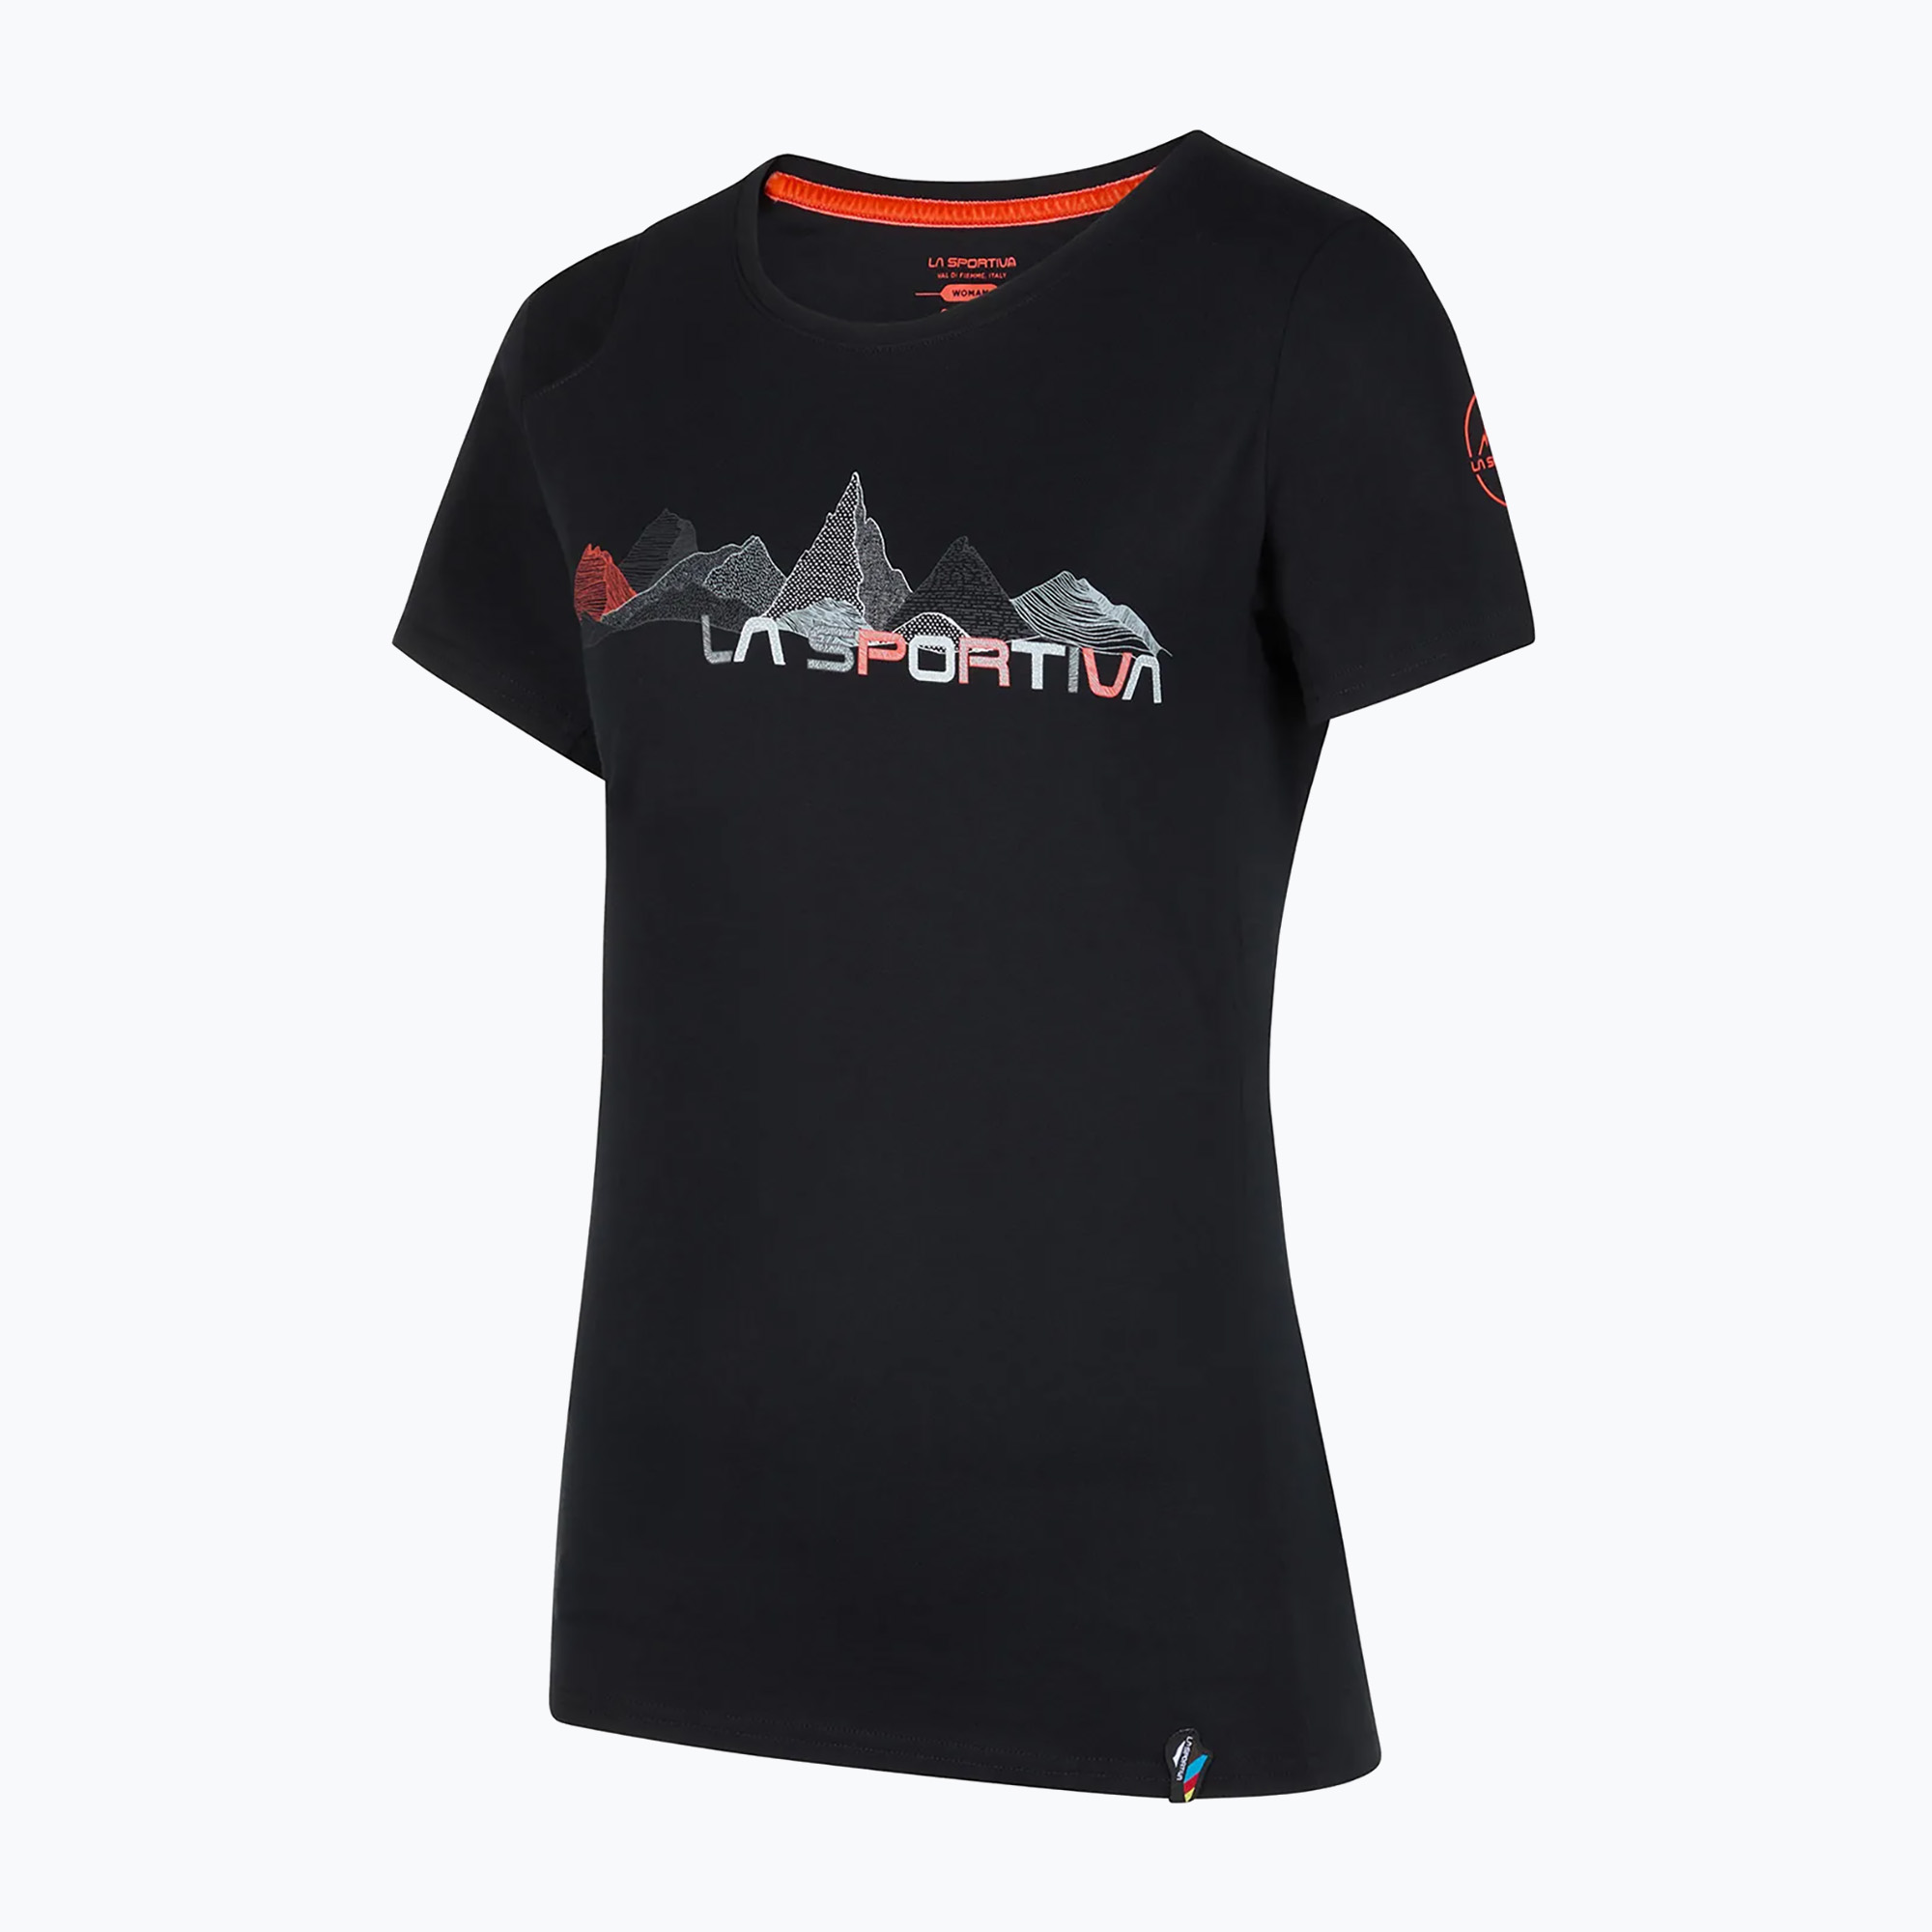 La Sportiva tricou pentru femei Peaks negru/roșii de cireșe